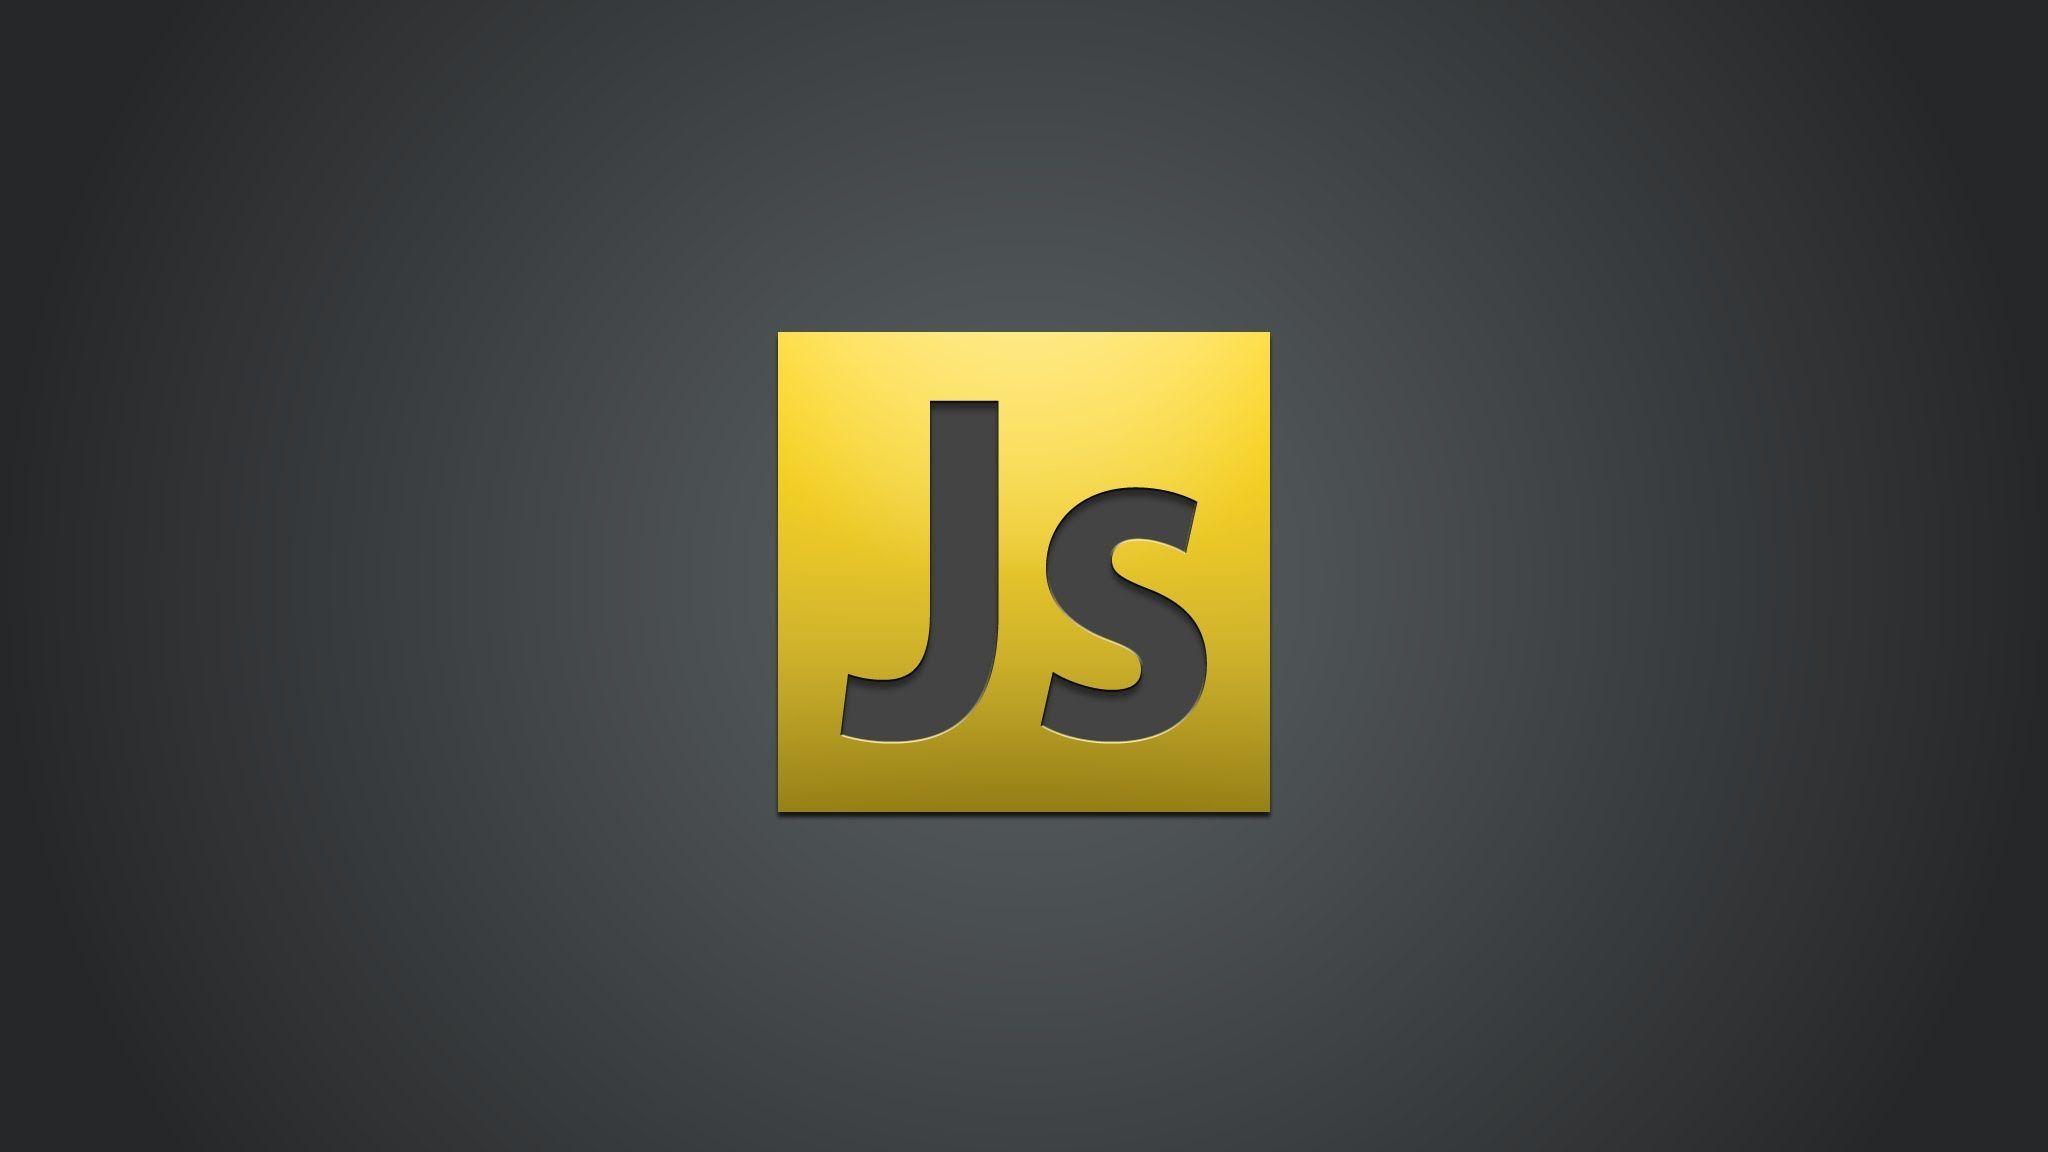 Curso básico de JavaScript - El DOM y JavaScript